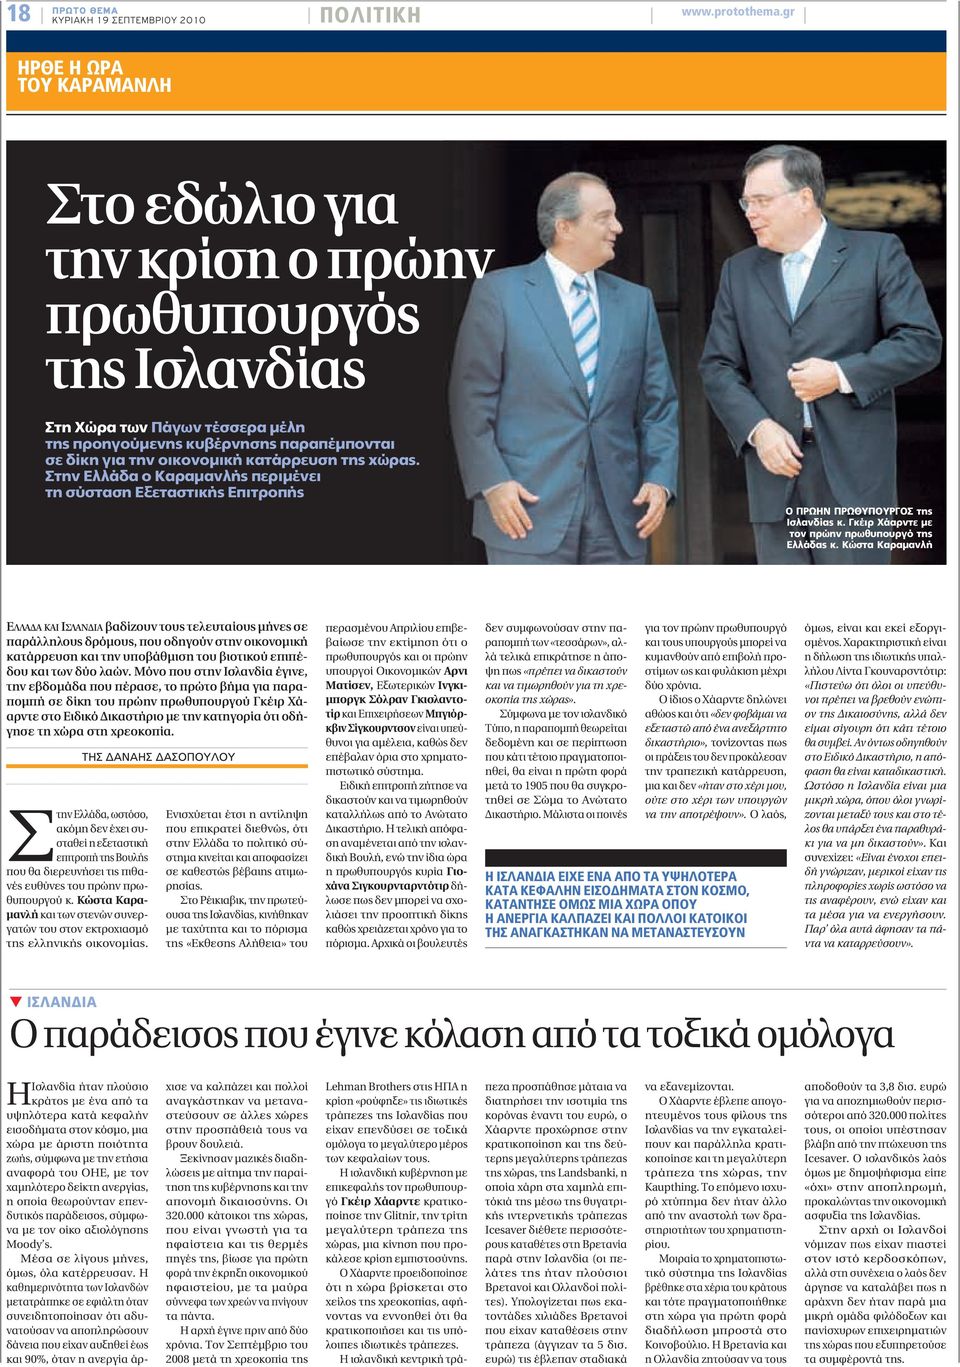 σε δίκη για την οικονομική κατάρρευση της χώρας. Στην Ελλάδα ο Καραμανλής περιμένει τη σύσταση Εξεταστικής Επιτροπής Ο ΠΡΩΗΝ ΠΡΩΘΥΠΟΥΡΓΟΣ της Ισλανδίας κ.